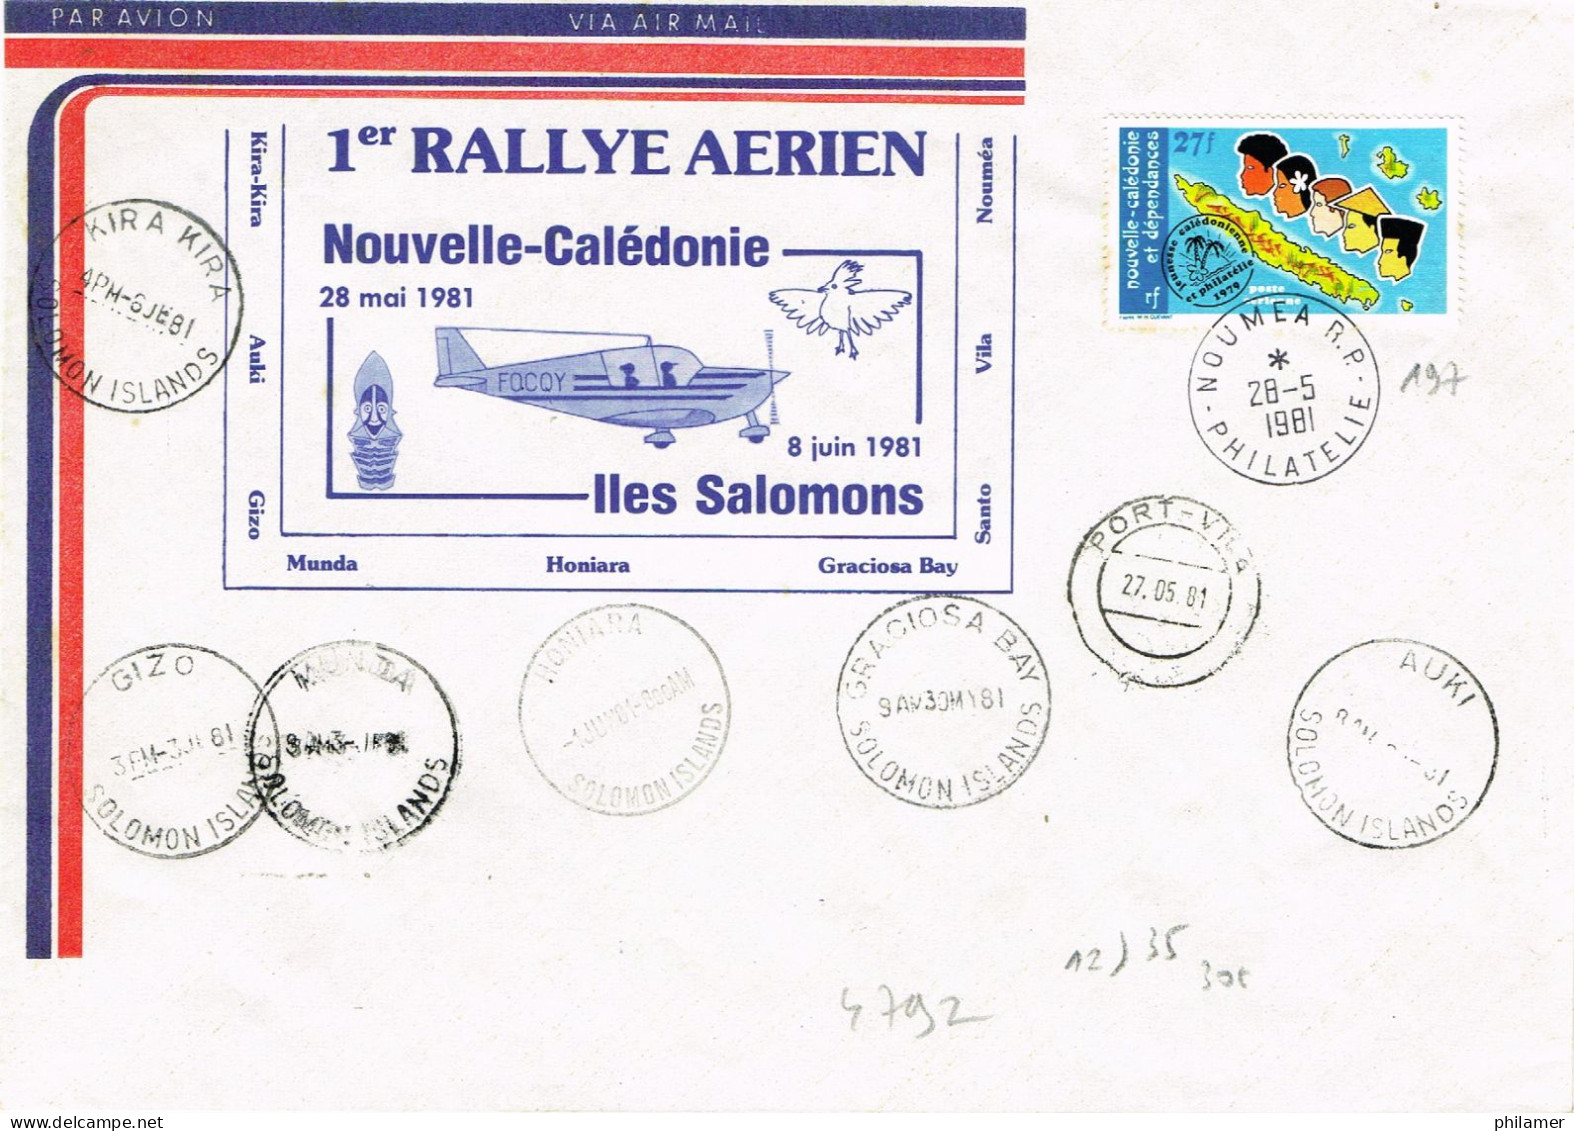 Nouvelle Caledonie Caledonie FFC Premier Vol Aerien Rally Iles Salomon 28 Mai 1981 Cad Port Vila Vanuatu BE - Lettres & Documents